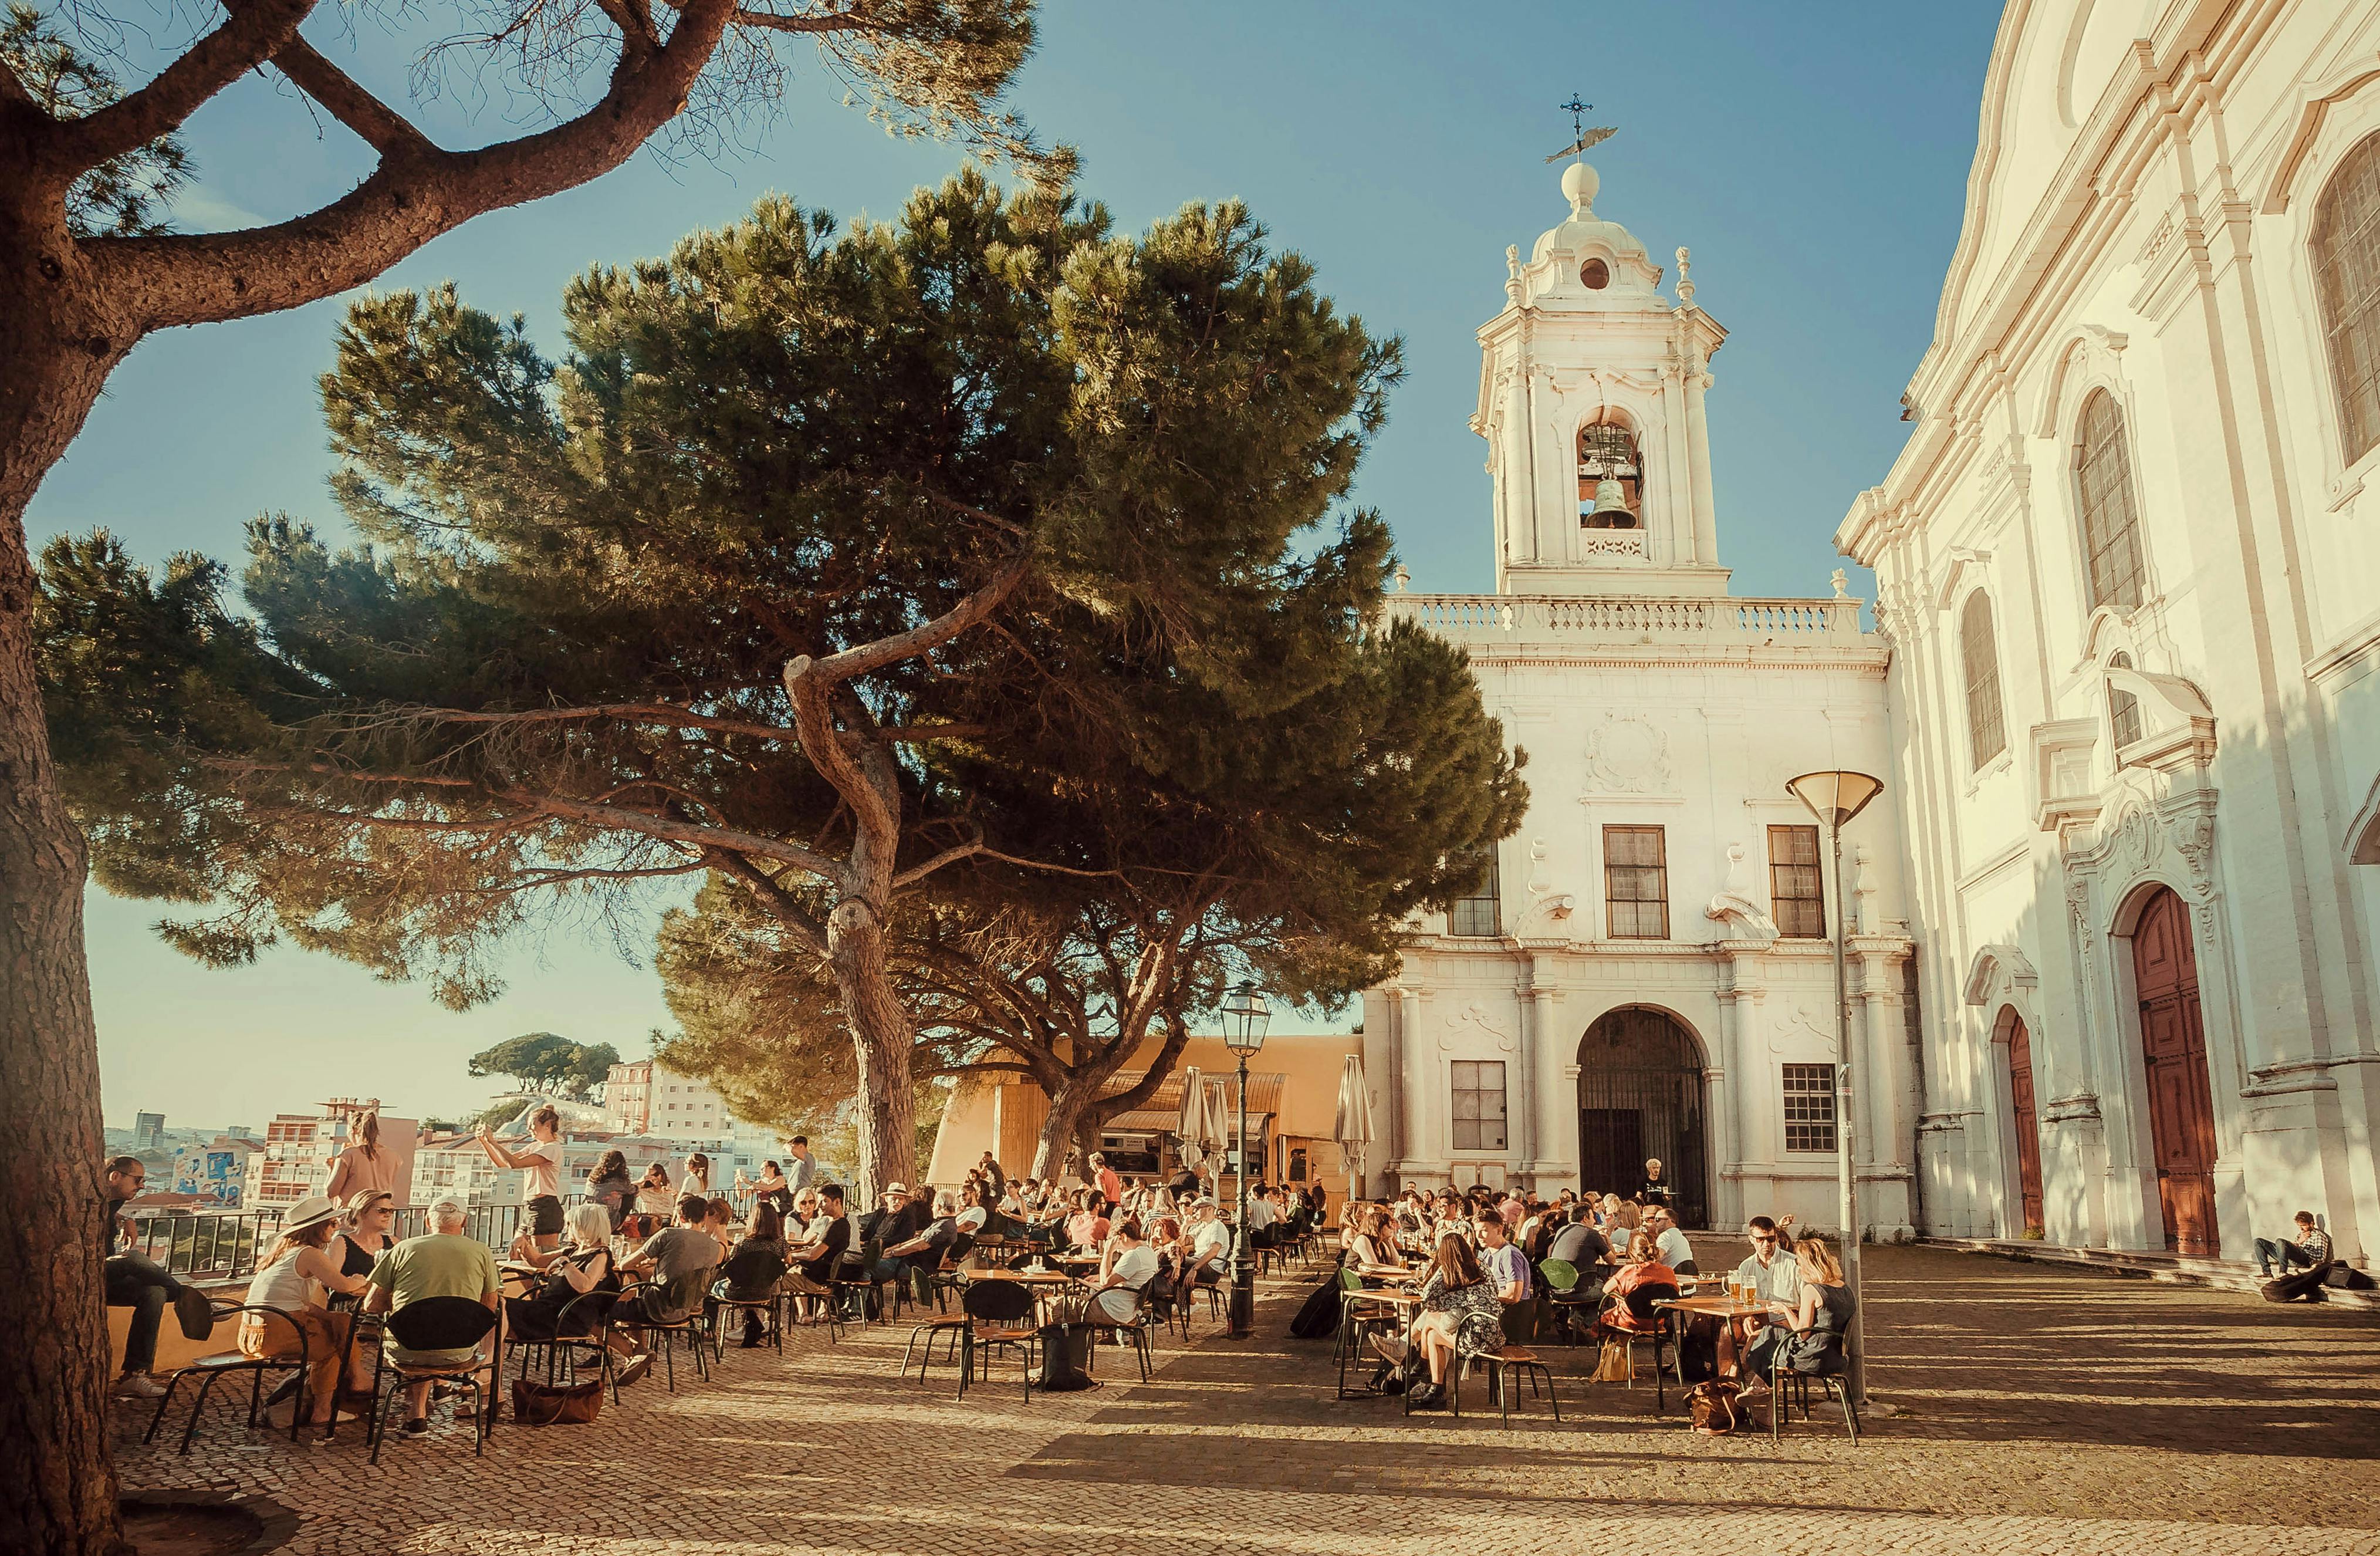 Lisboa es una ciudad llena de encanto antiguo y espacios llenos de vida